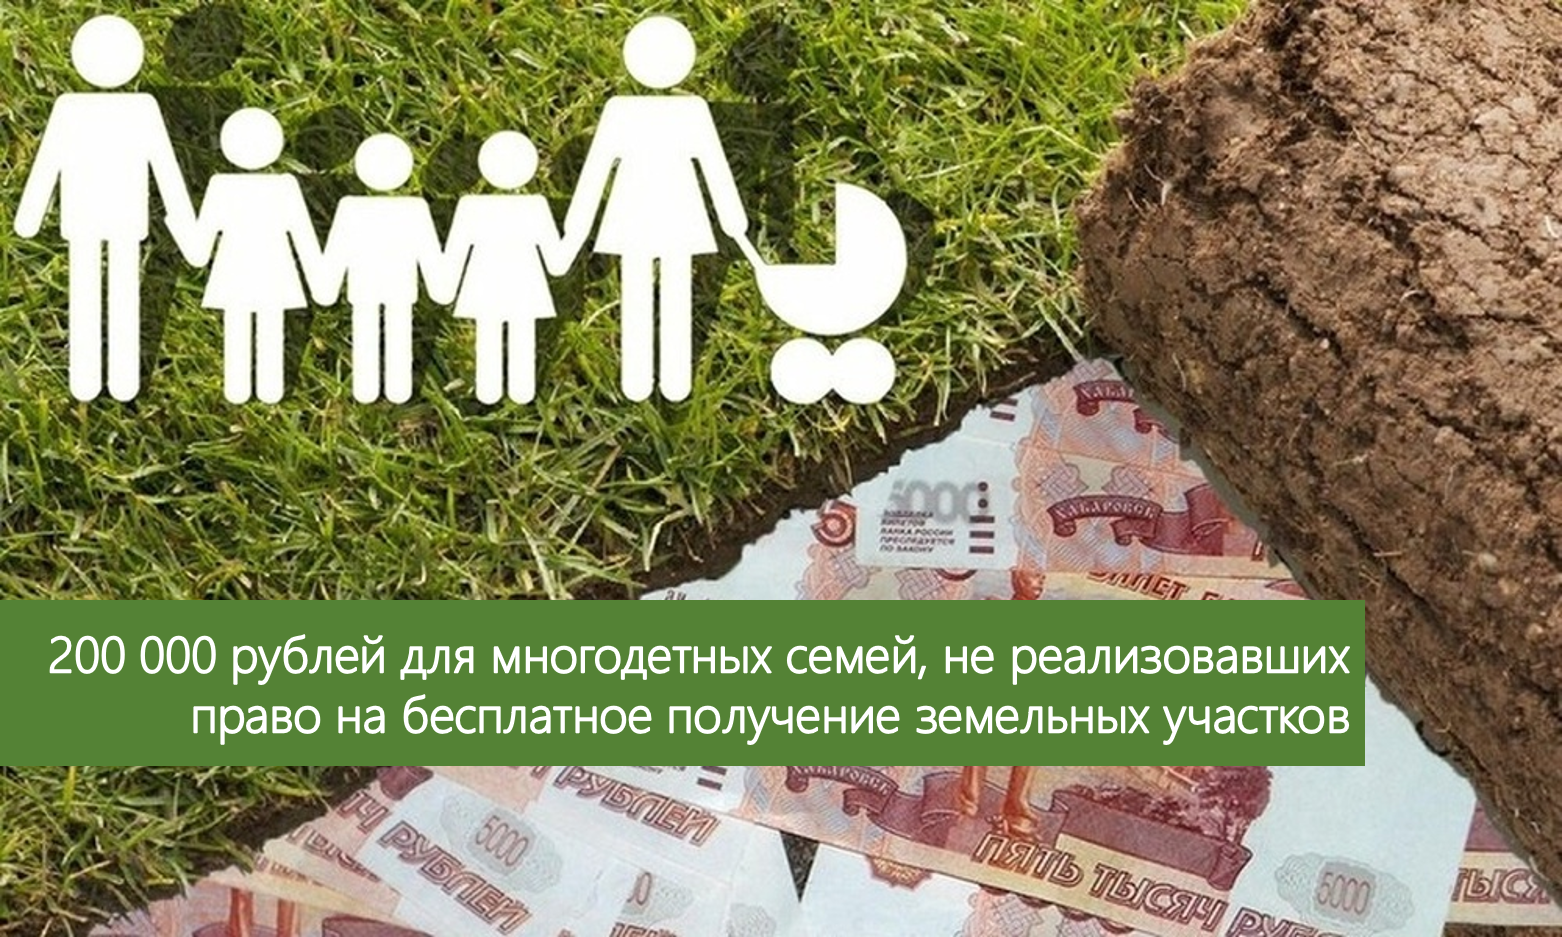 Единовременная денежная выплата многодетным семьям взамен земельного участка в размере 200 тысяч рублей